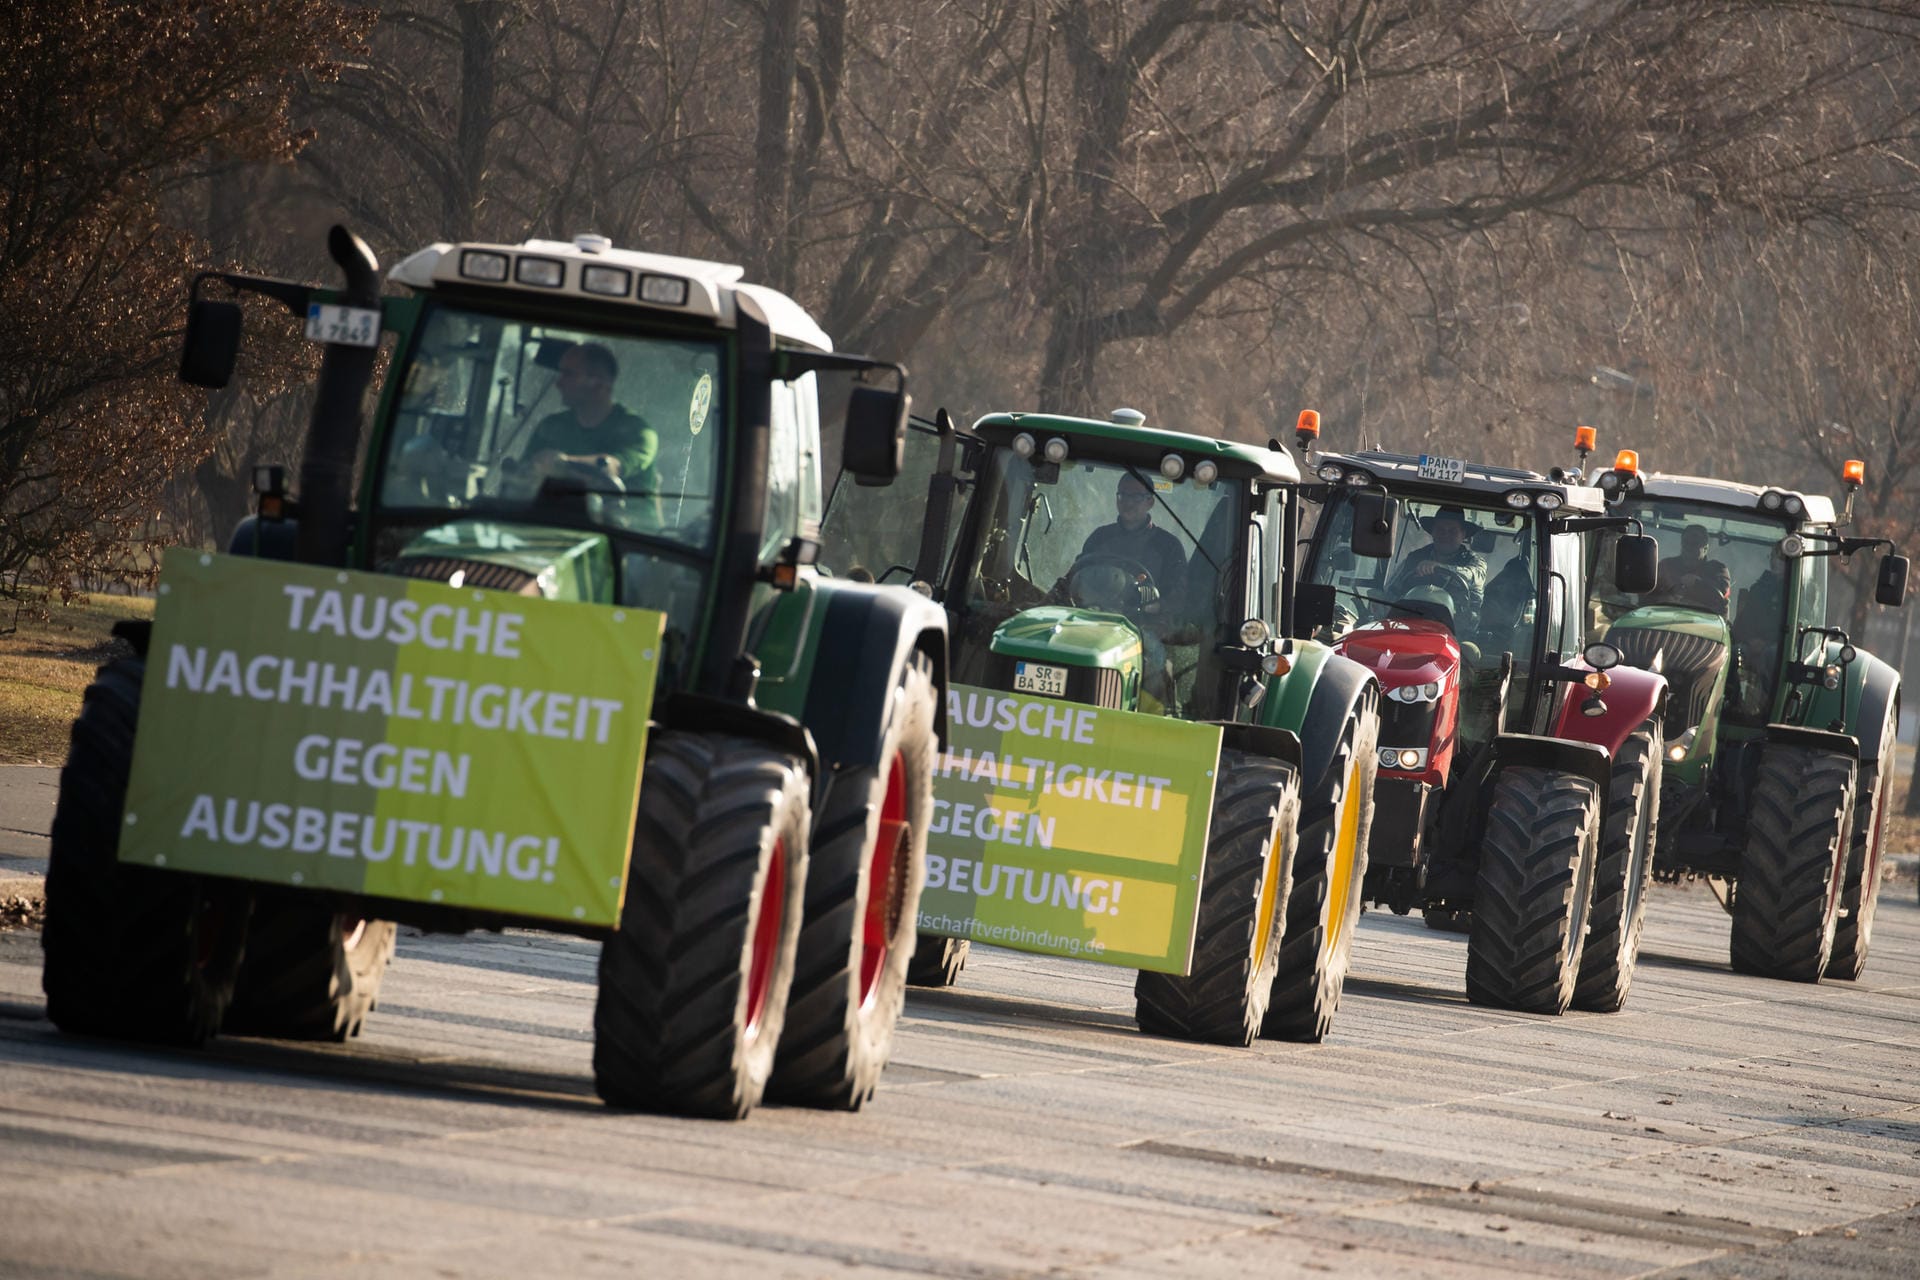 "Tausche Nachhaltigkeit gegen Ausbeutung": Viele Bauern demonstrierten gegen ihrer Ansicht nach unfaire Lebensmittelpreise.